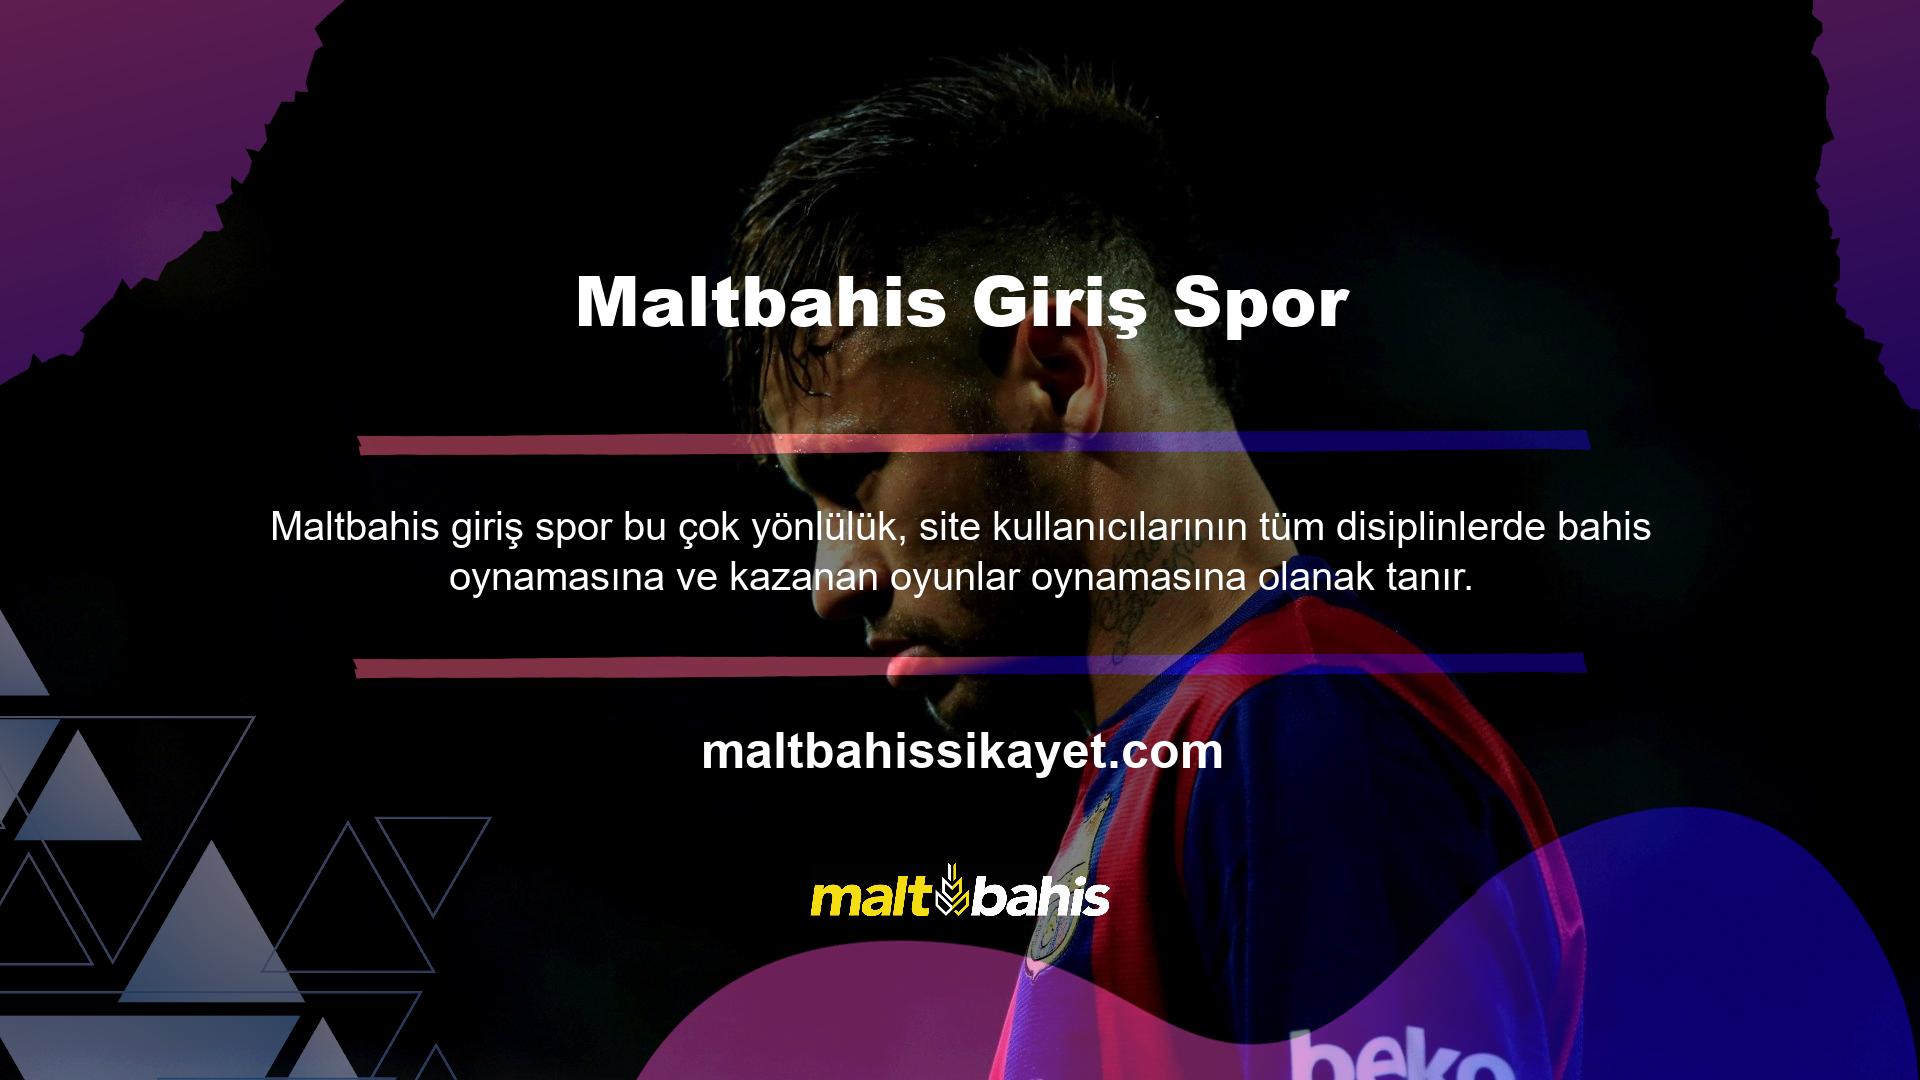 Maltbahis Giriş Spor Web Sitesi, Maltbahis üzerinden spor tutkunlarının erişebileceği bölümdür